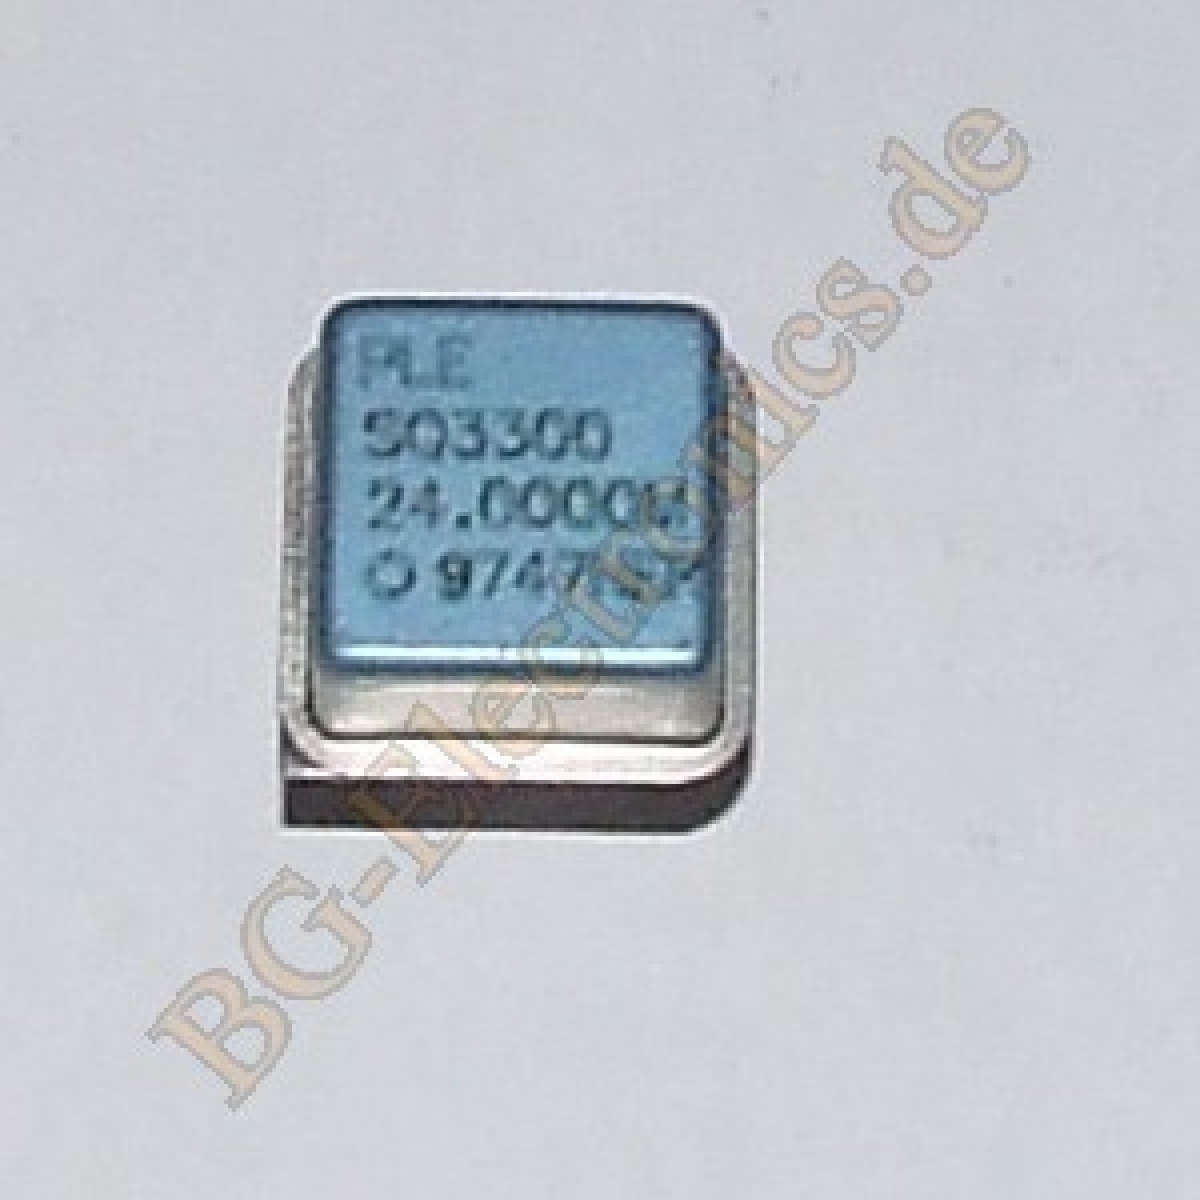 24.0000 Mhz Crystal Oscillator